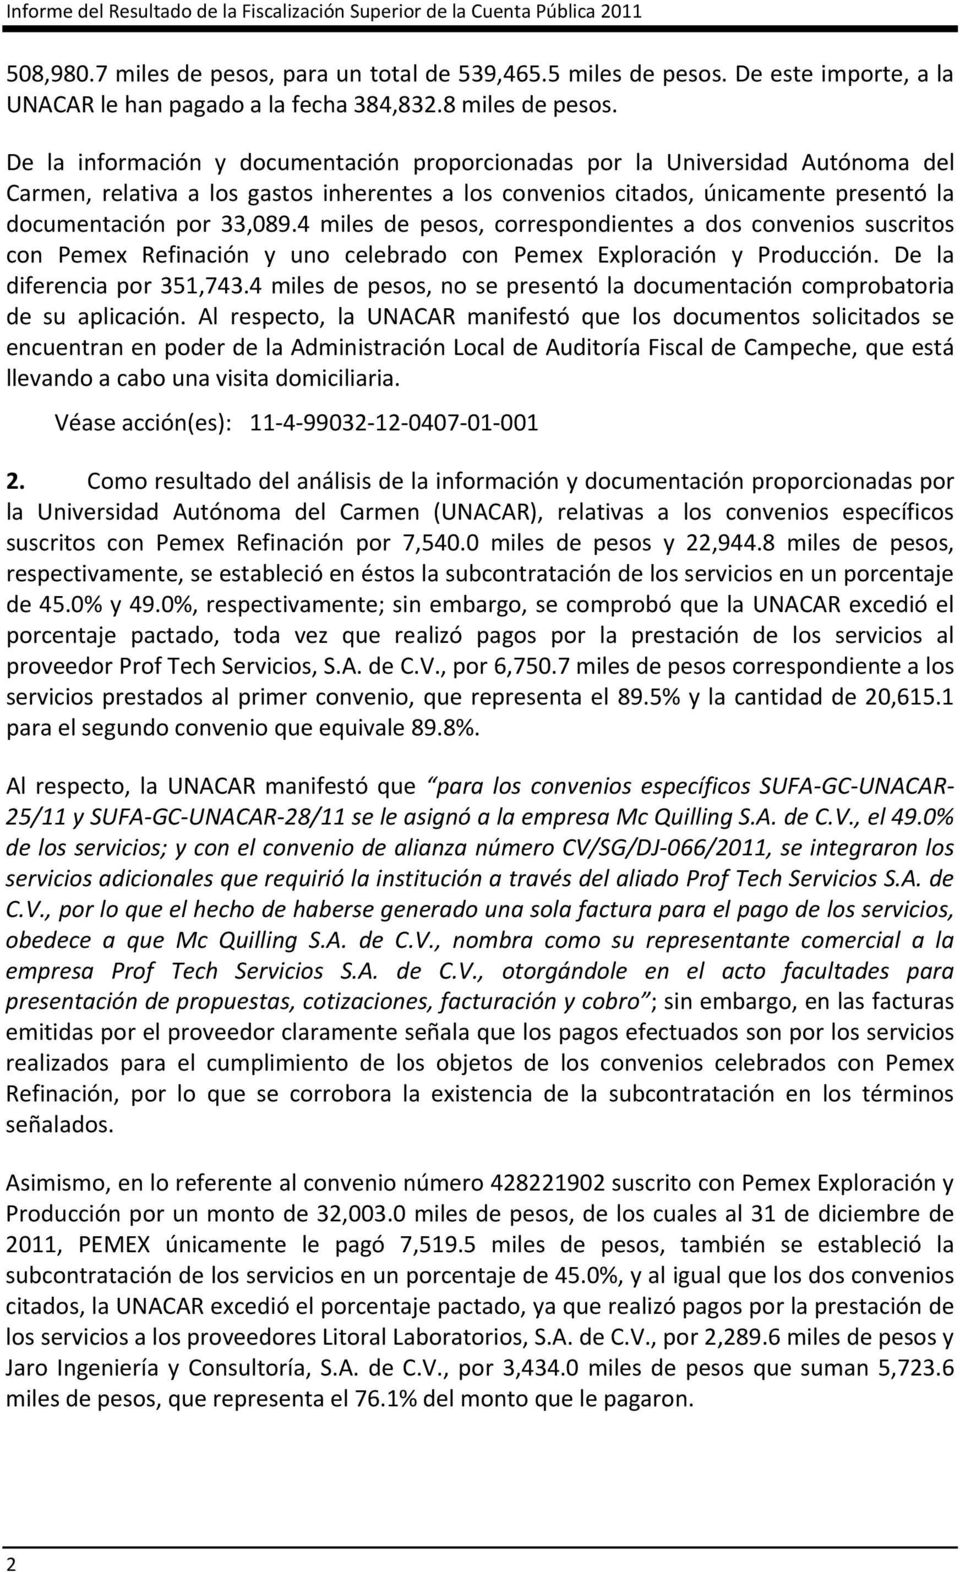 De la información y documentación proporcionadas por la Universidad Autónoma del Carmen, relativa a los gastos inherentes a los convenios citados, únicamente presentó la documentación por 33,089.